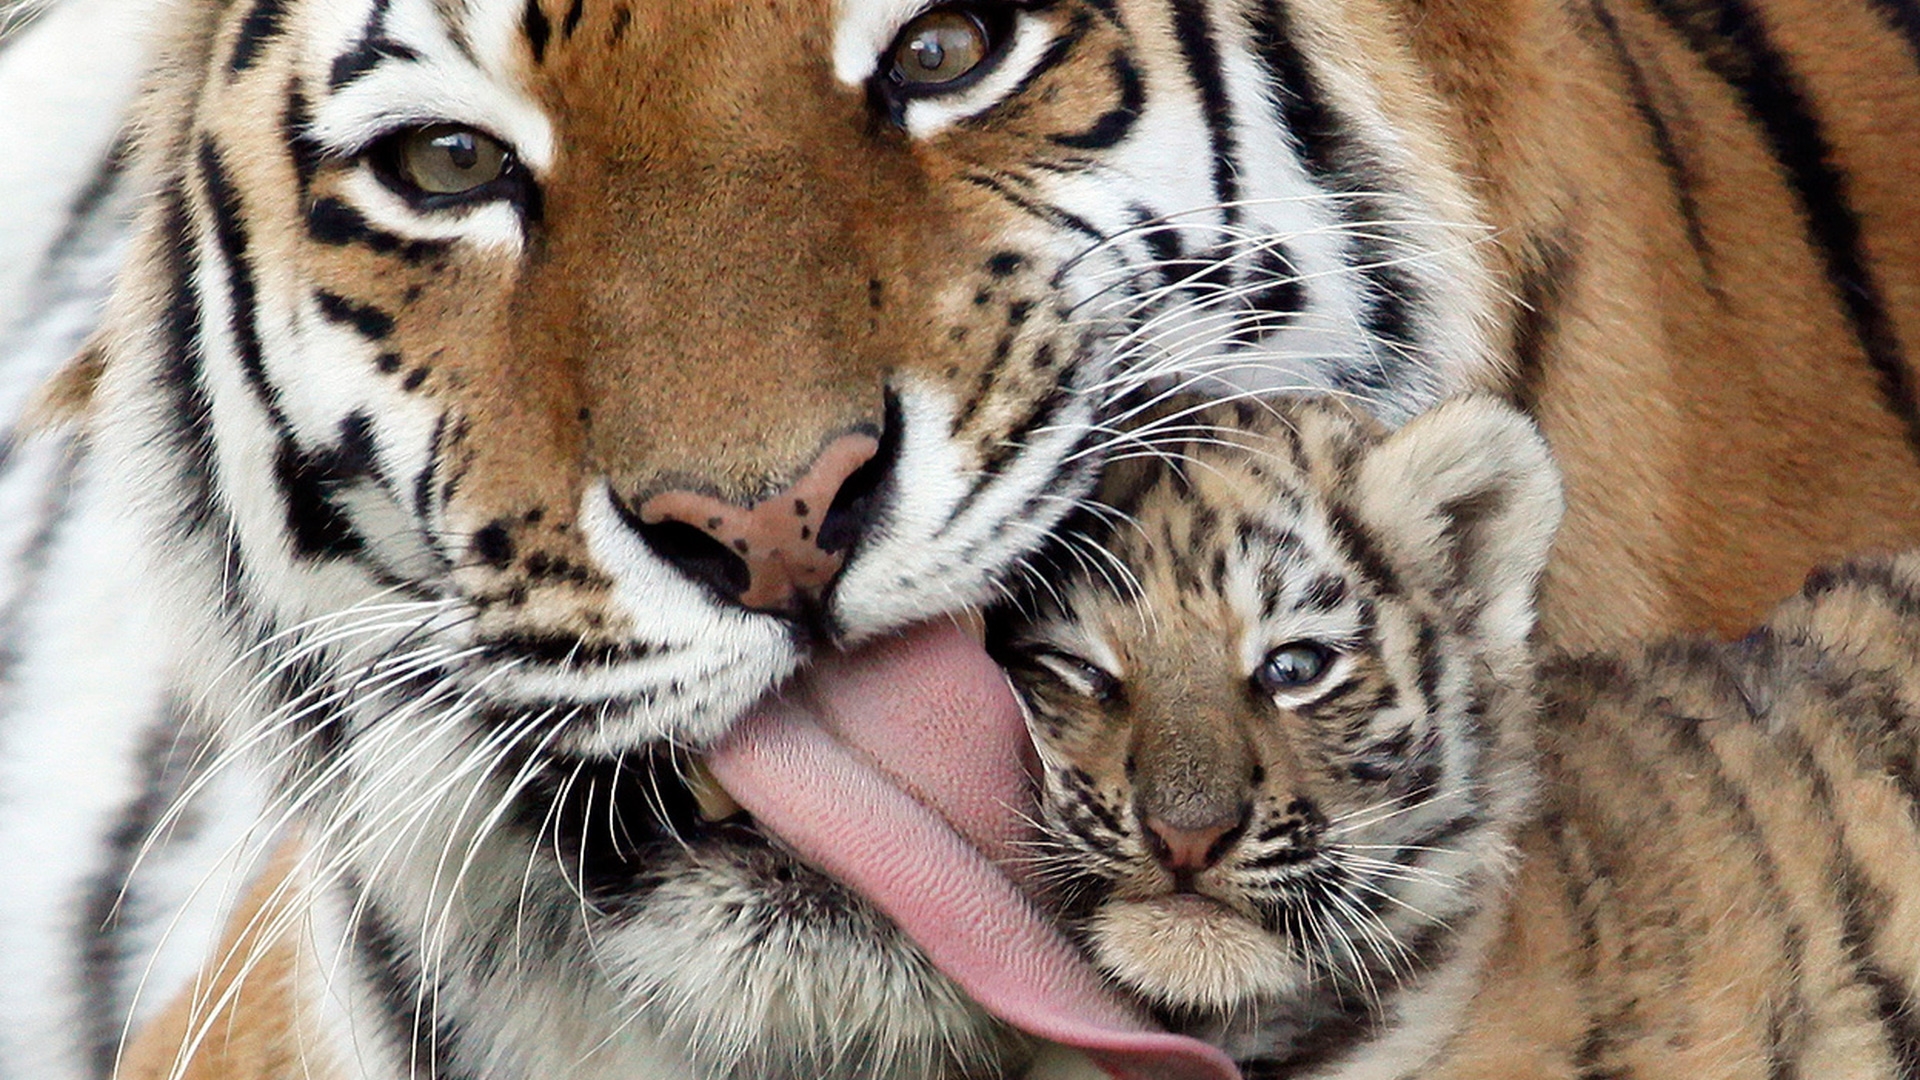 Tiger cub hd